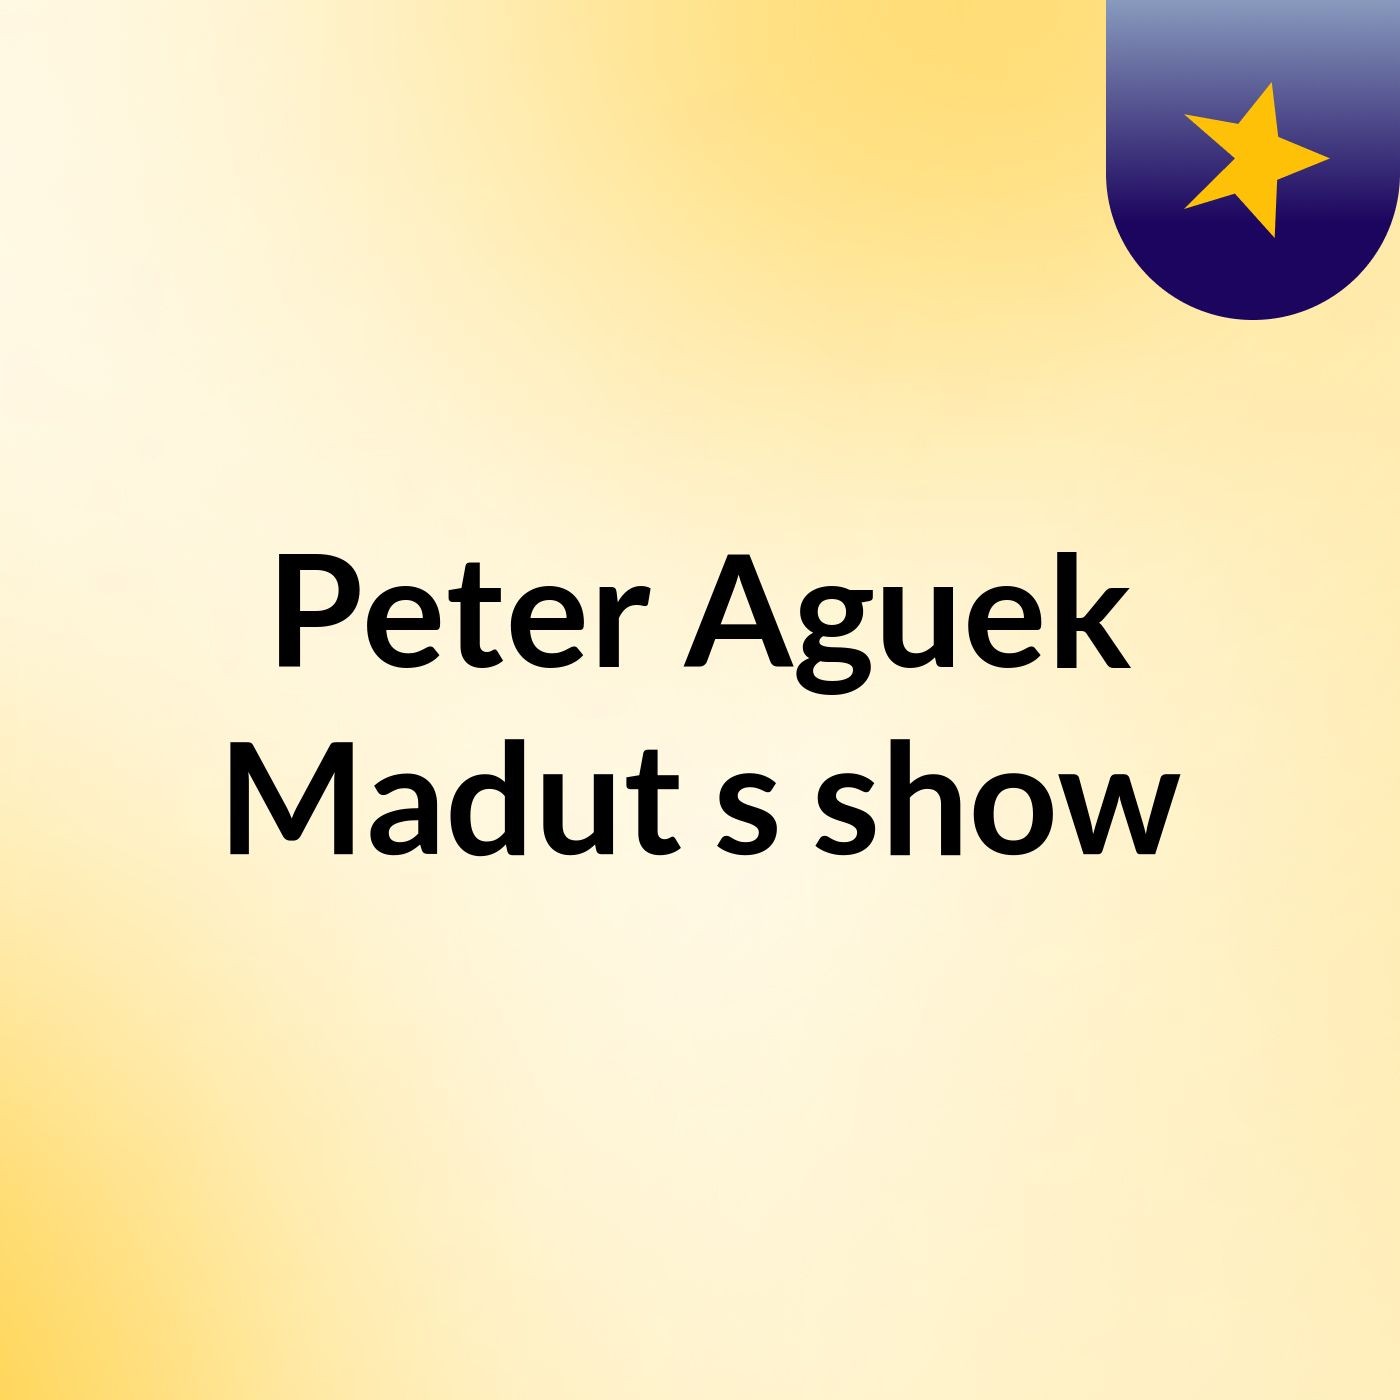 Episode 2 - Peter Aguek Madut's show